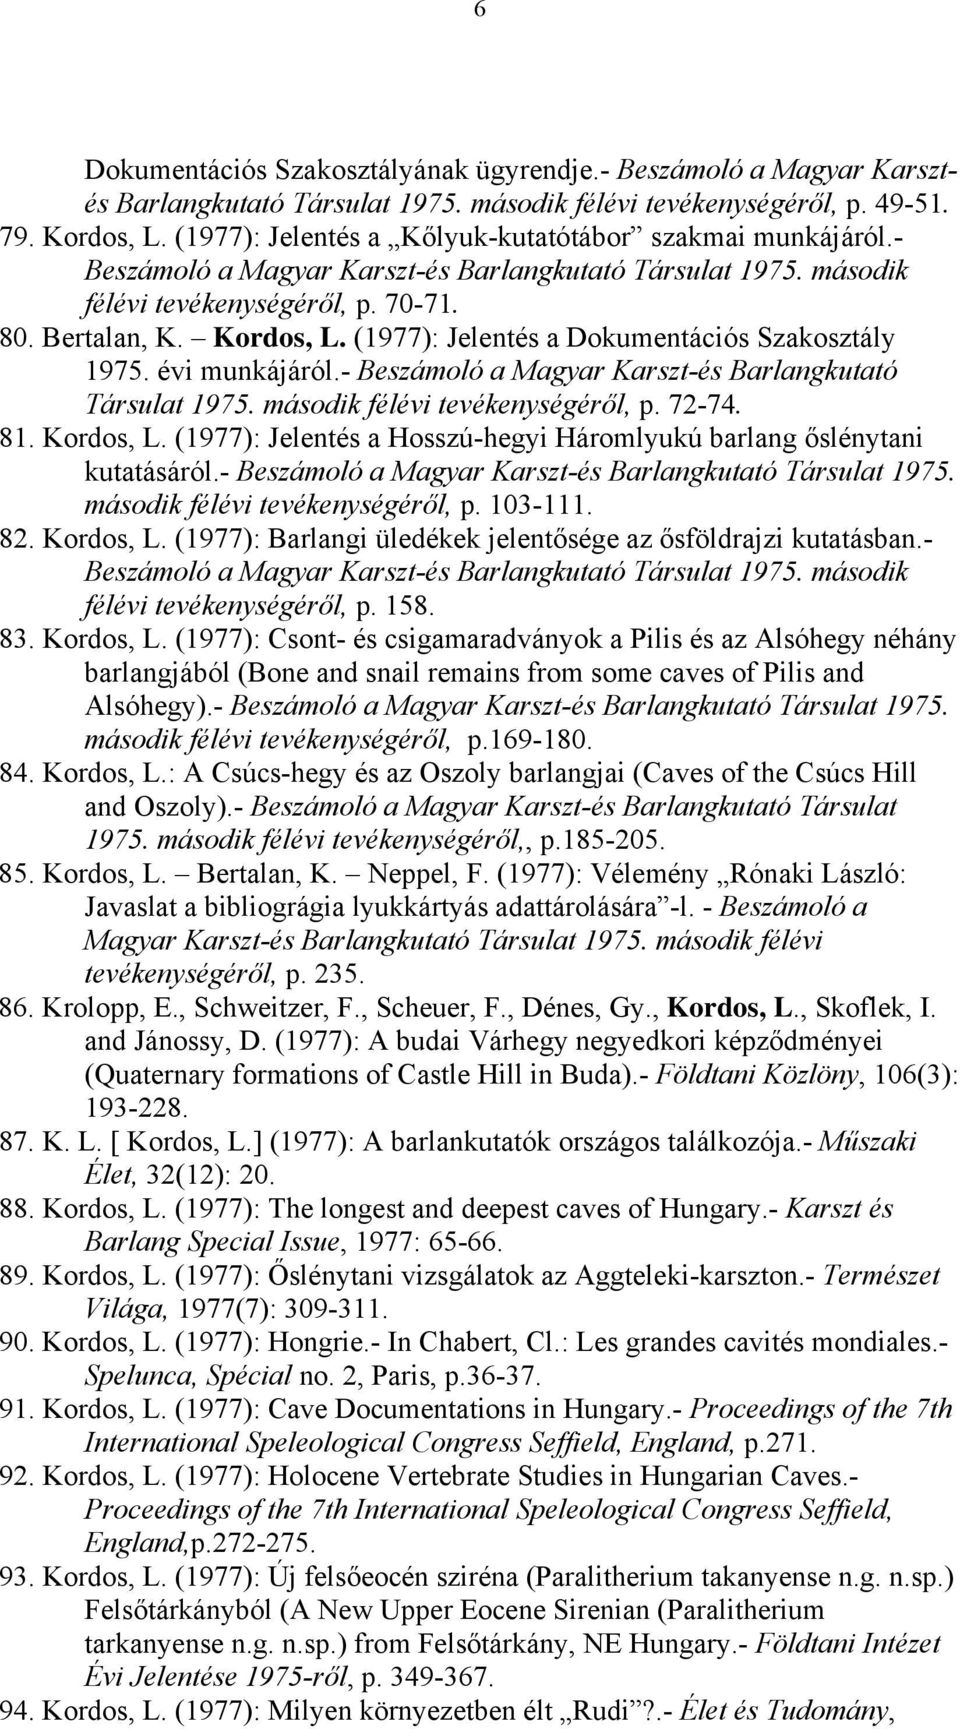 (1977): Jelentés a Dokumentációs Szakosztály 1975. évi munkájáról.- Beszámoló a Magyar Karszt-és Barlangkutató Társulat 1975. második félévi tevékenységéről, p. 72-74. 81. Kordos, L.